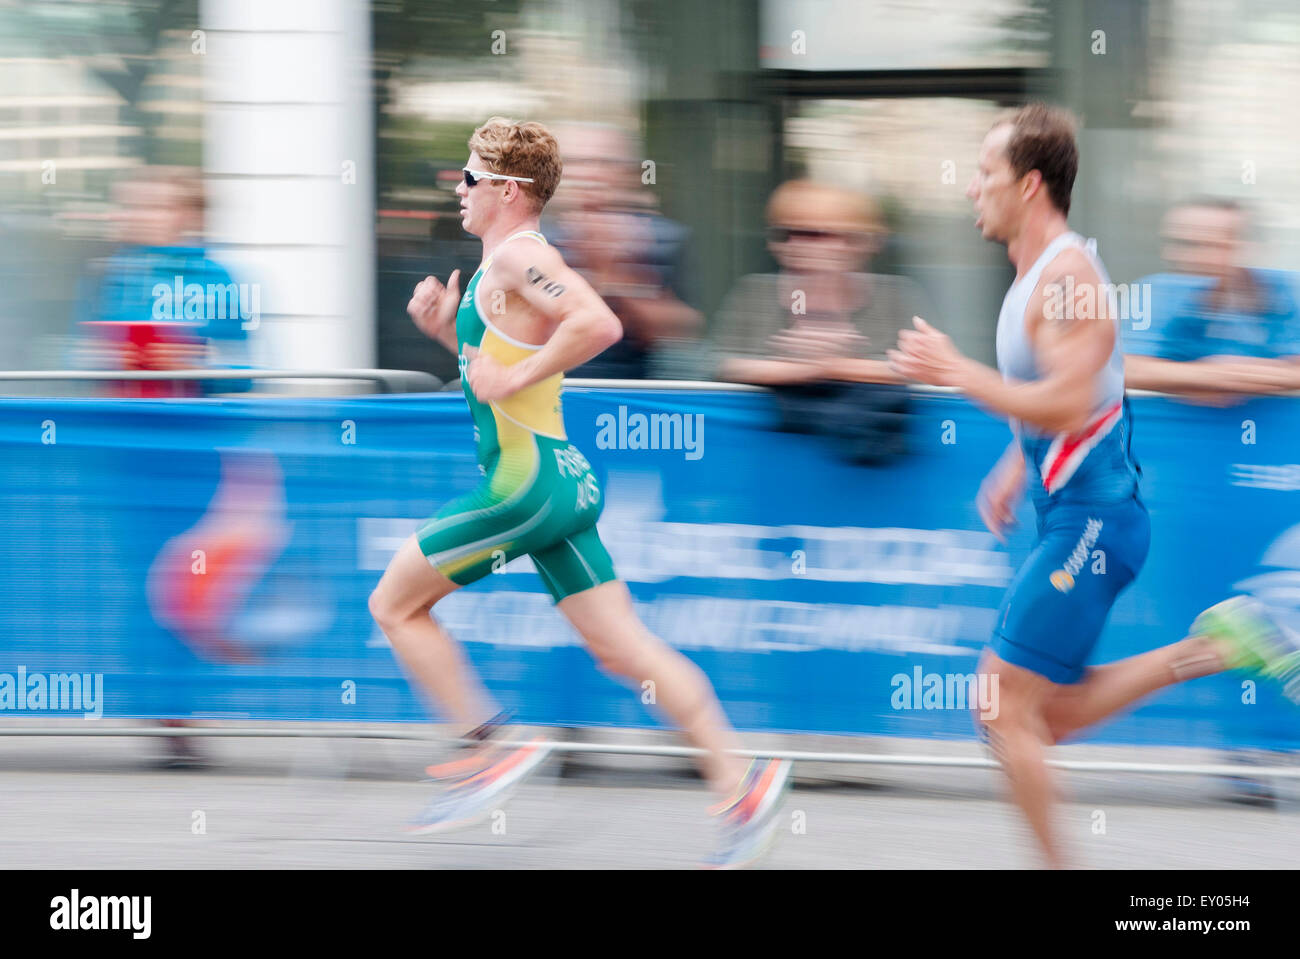 Hambourg, Allemagne, 18 juillet 2015. Les athlètes concourent dans la section courante de l'ITU World Triathlon Hambourg 2015.2015. Crédit : Peter Doherty/Alamy Live News Banque D'Images